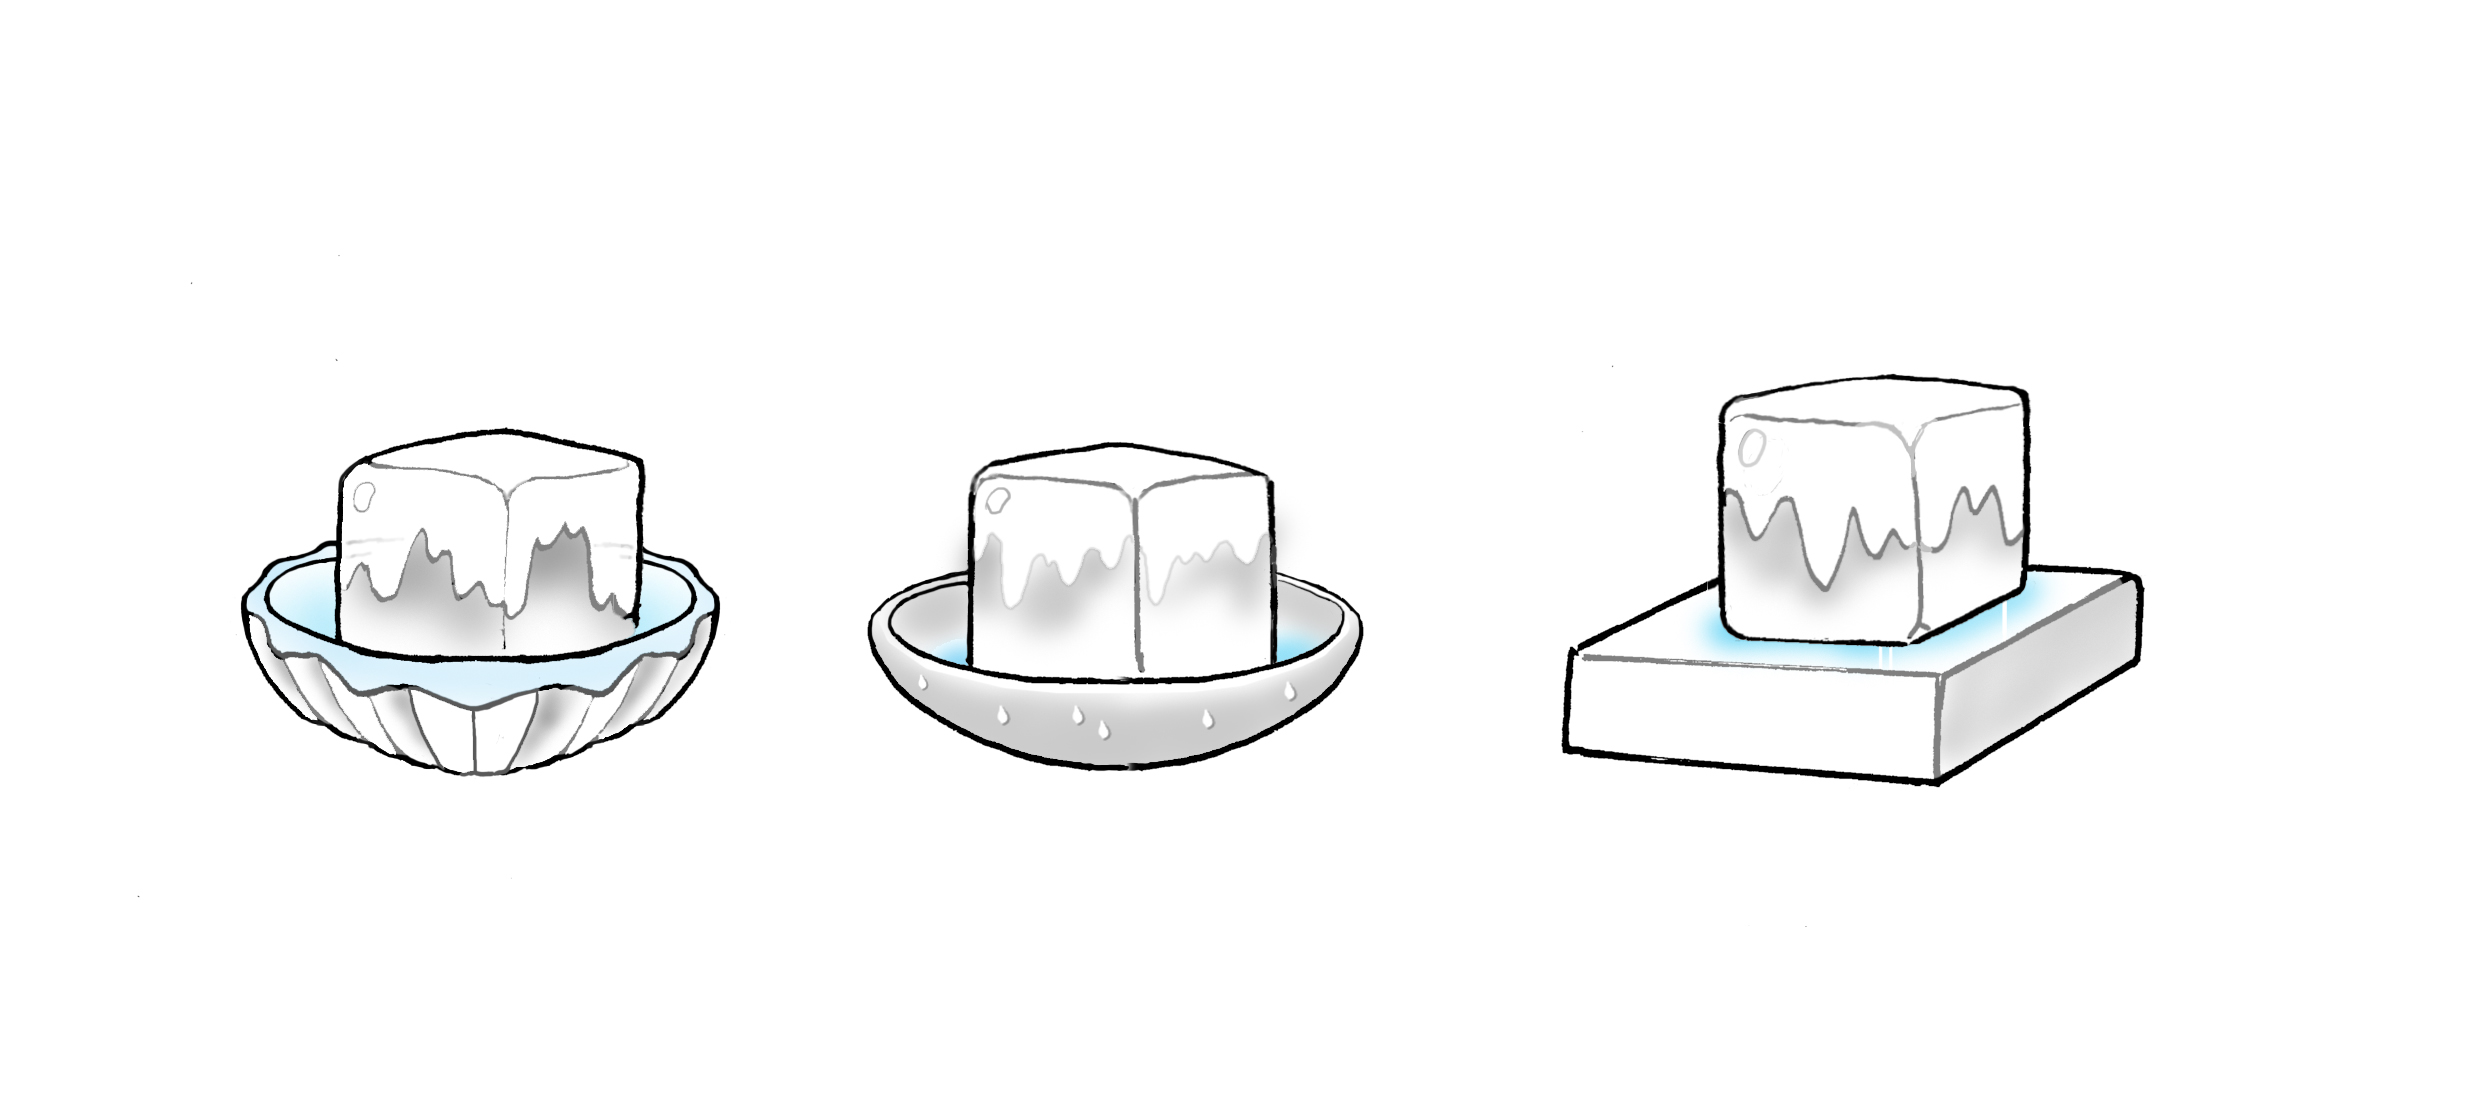 氷のとけ方をくらべよう 観察 自由研究プロジェクト 学研キッズネット